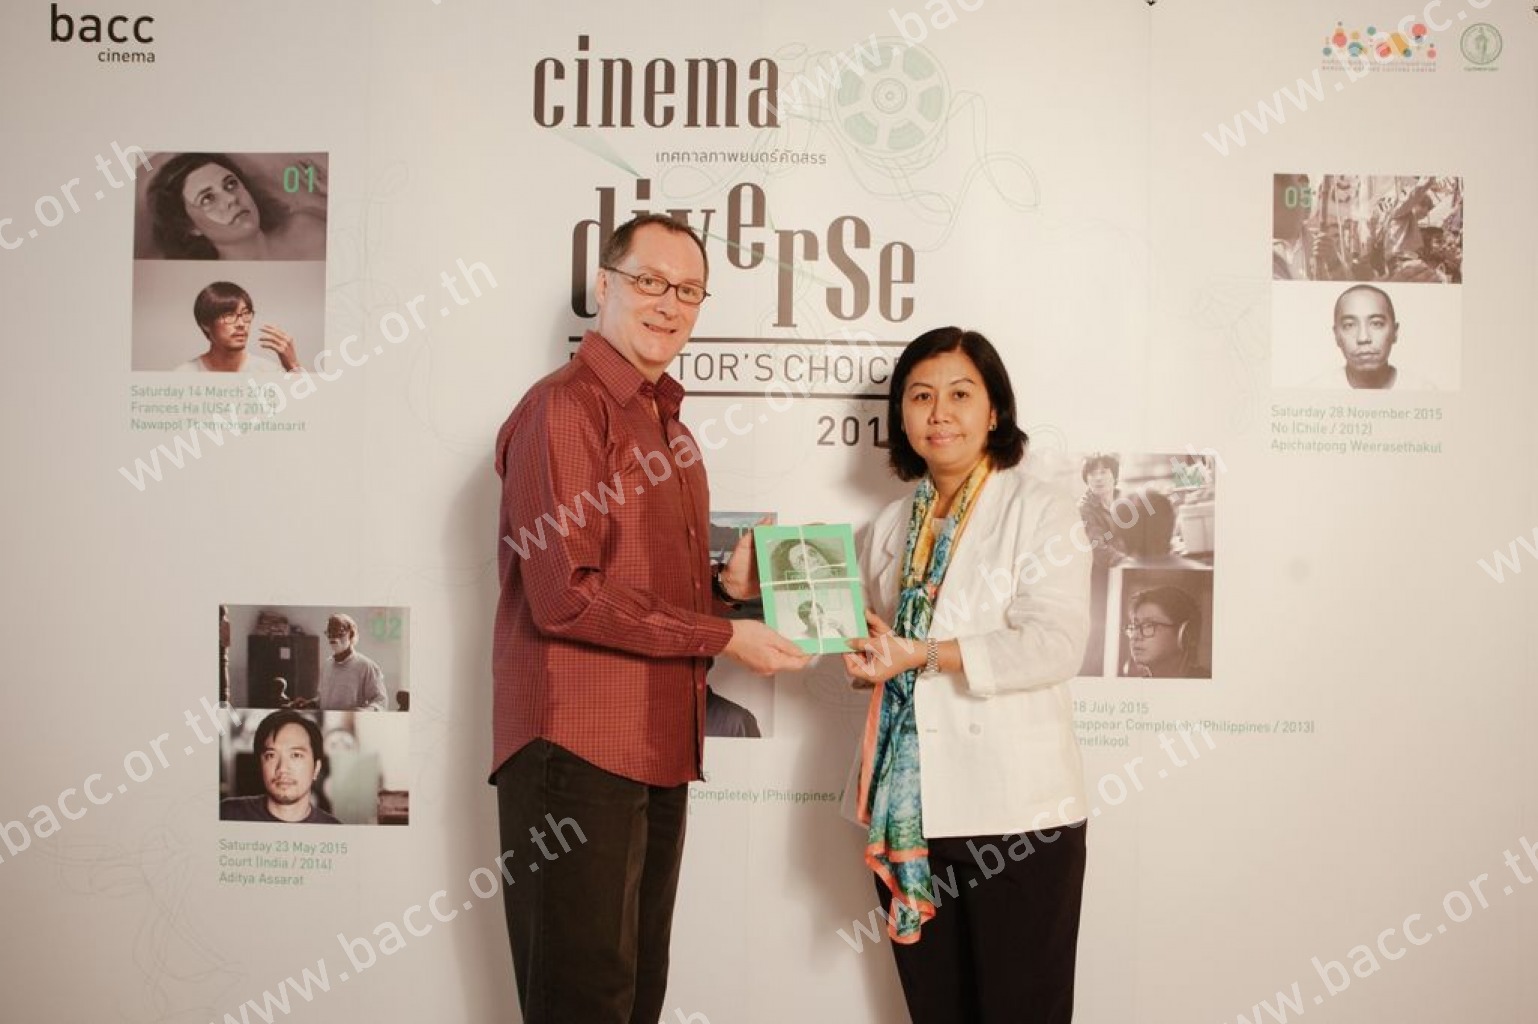 เทศกาลภาพยนตร์คัดสรร CINEMA DIVERSE 2015 : DIRECTOR’S CHOICE - Frances Ha (2012)